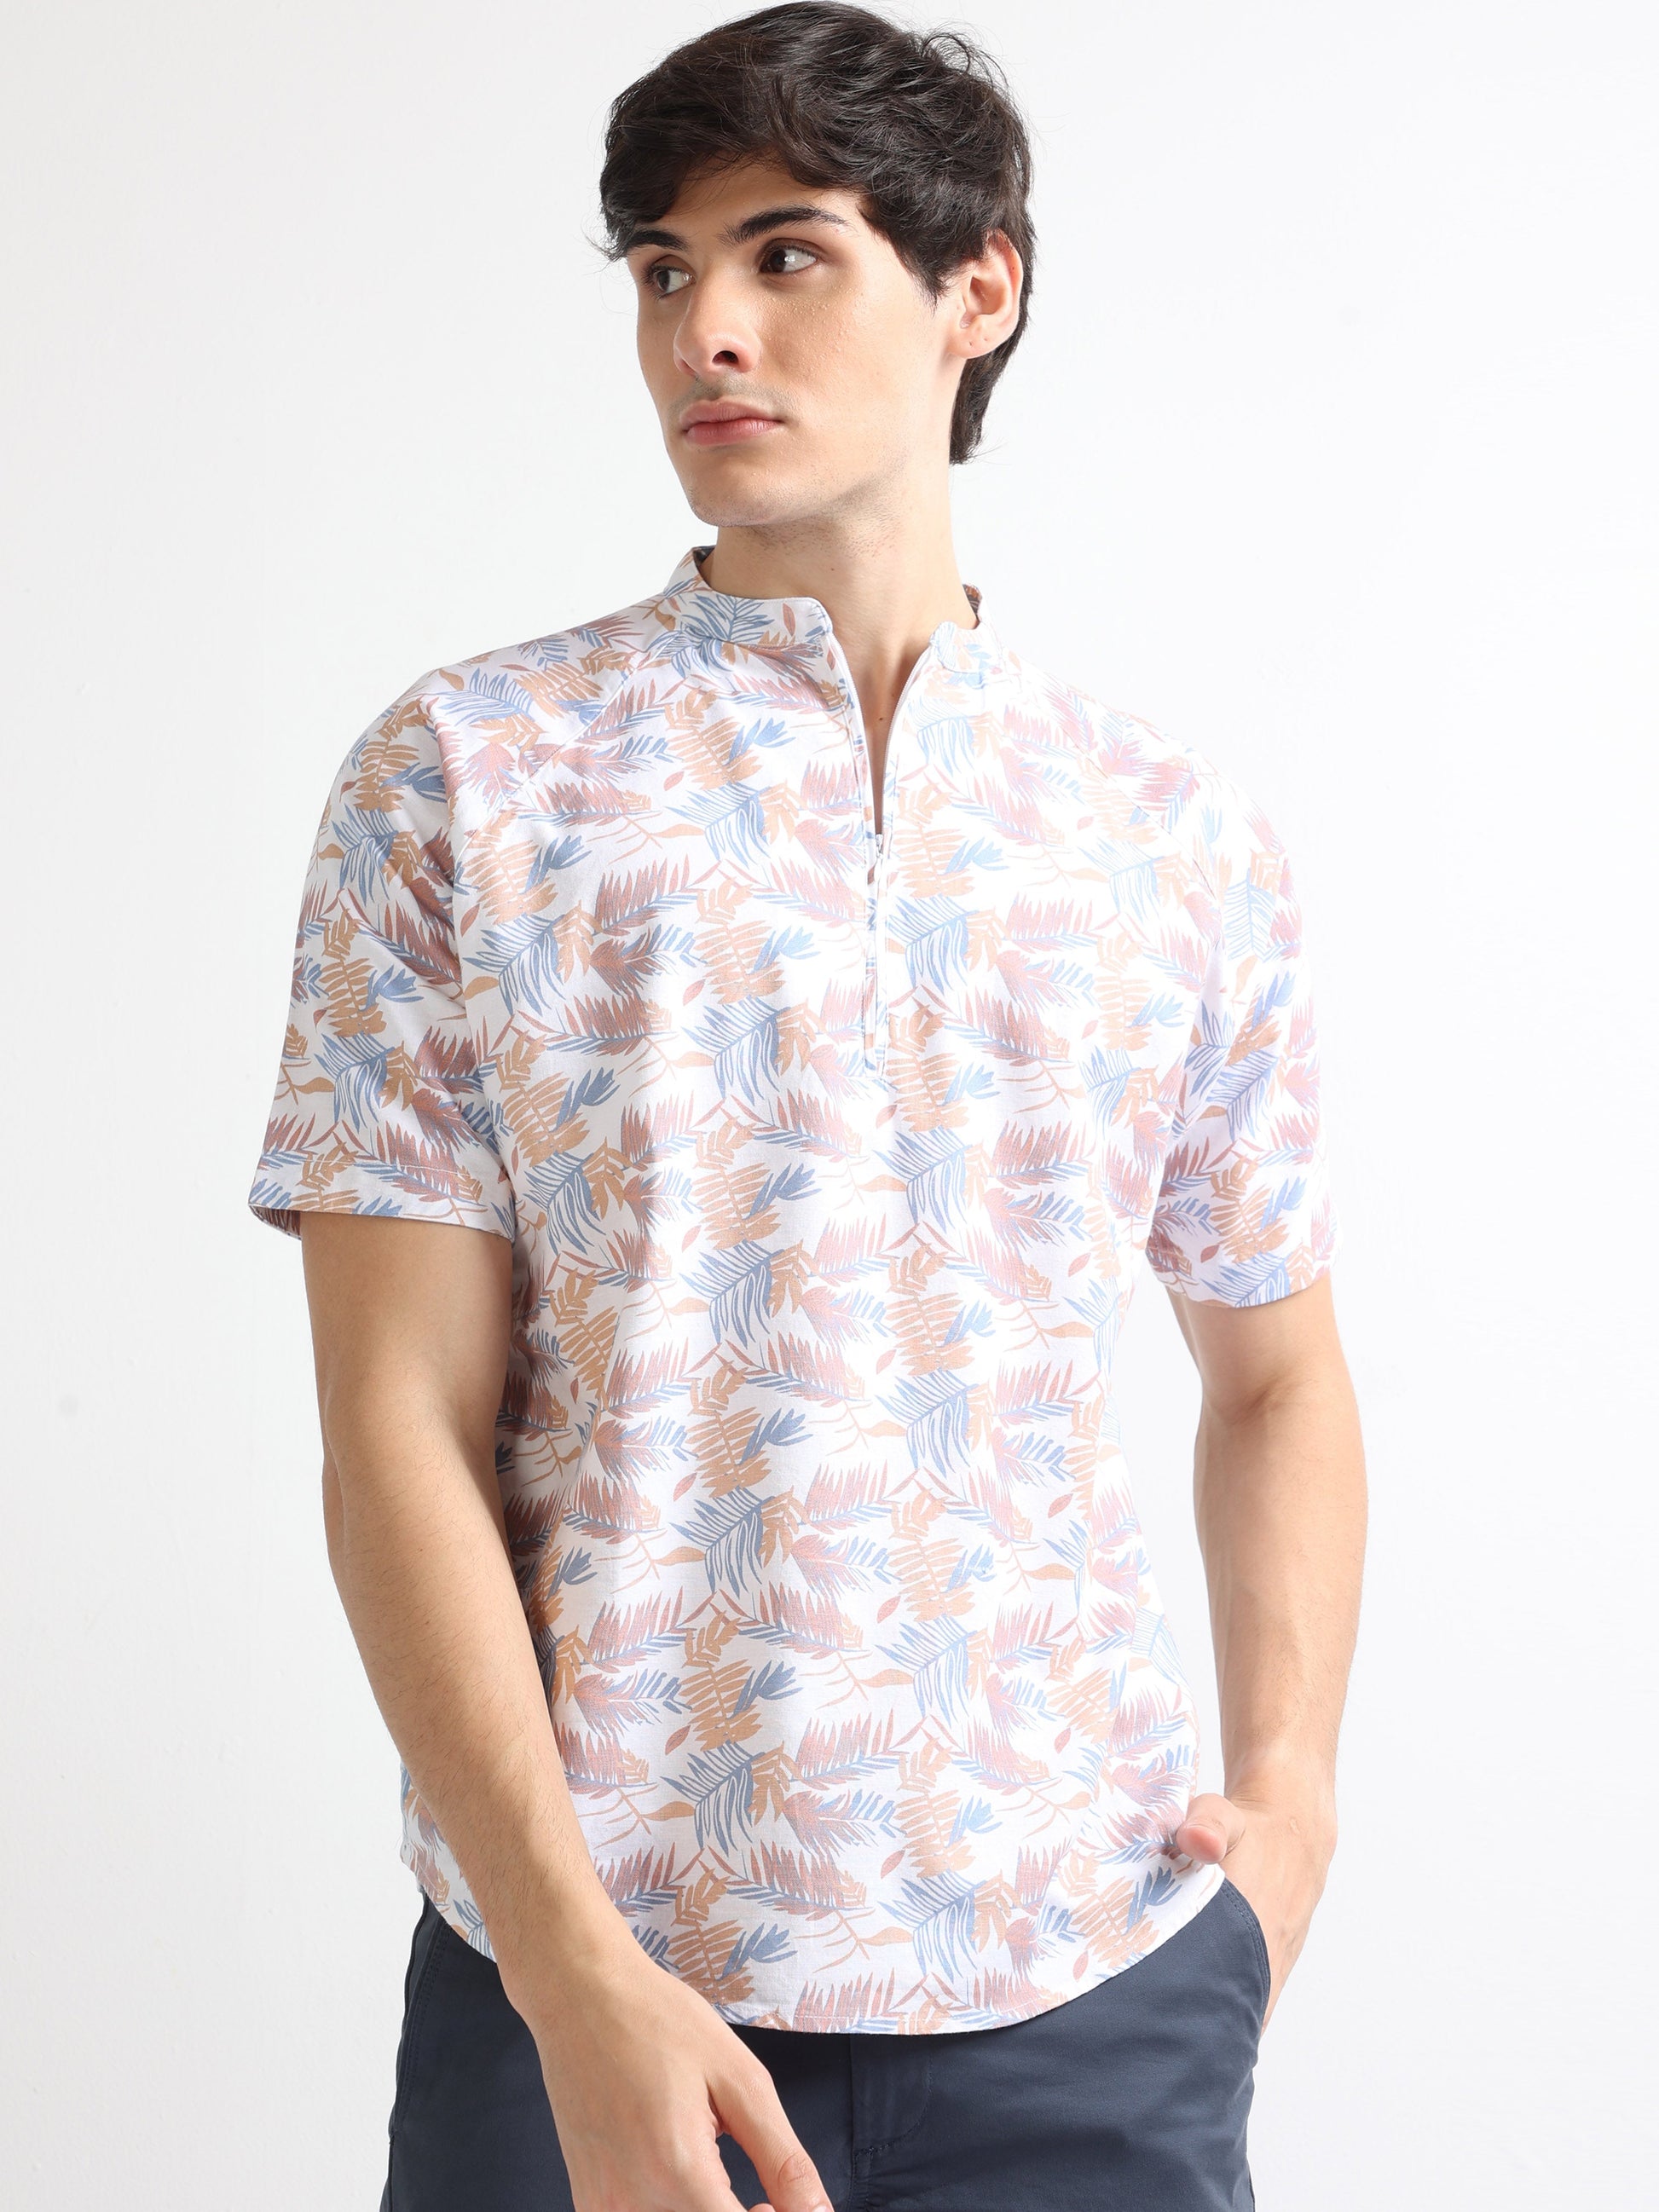 Buy Raglan Half Sleeve Floral Print Mens Shirt Online.